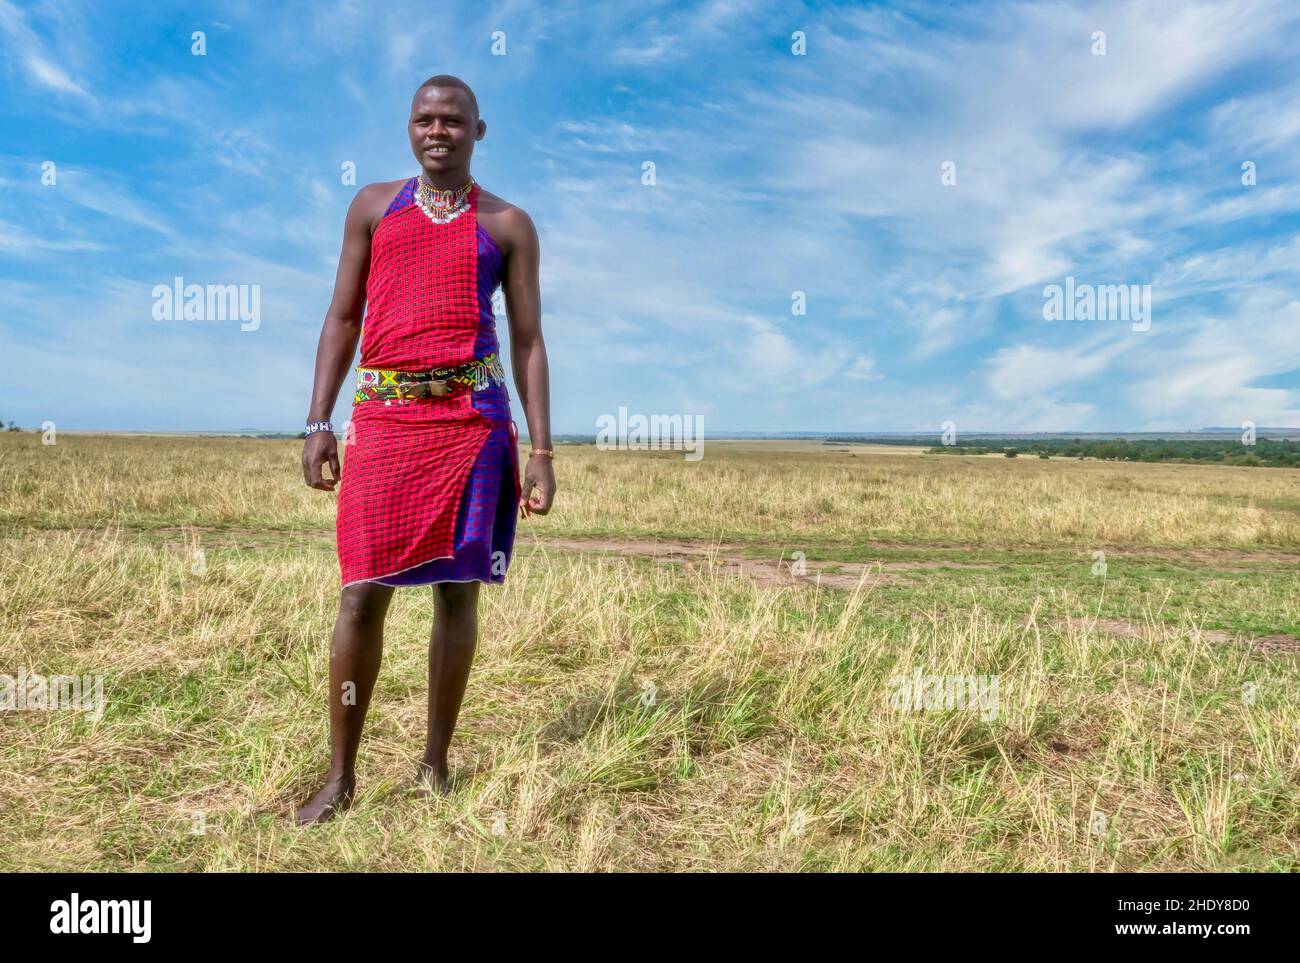 Africa, Kenya, Maasai Mara. A colorful display of fabrics and cloth of the  Maasai people at Olanana in the Maasai Mara Stock Photo - Alamy